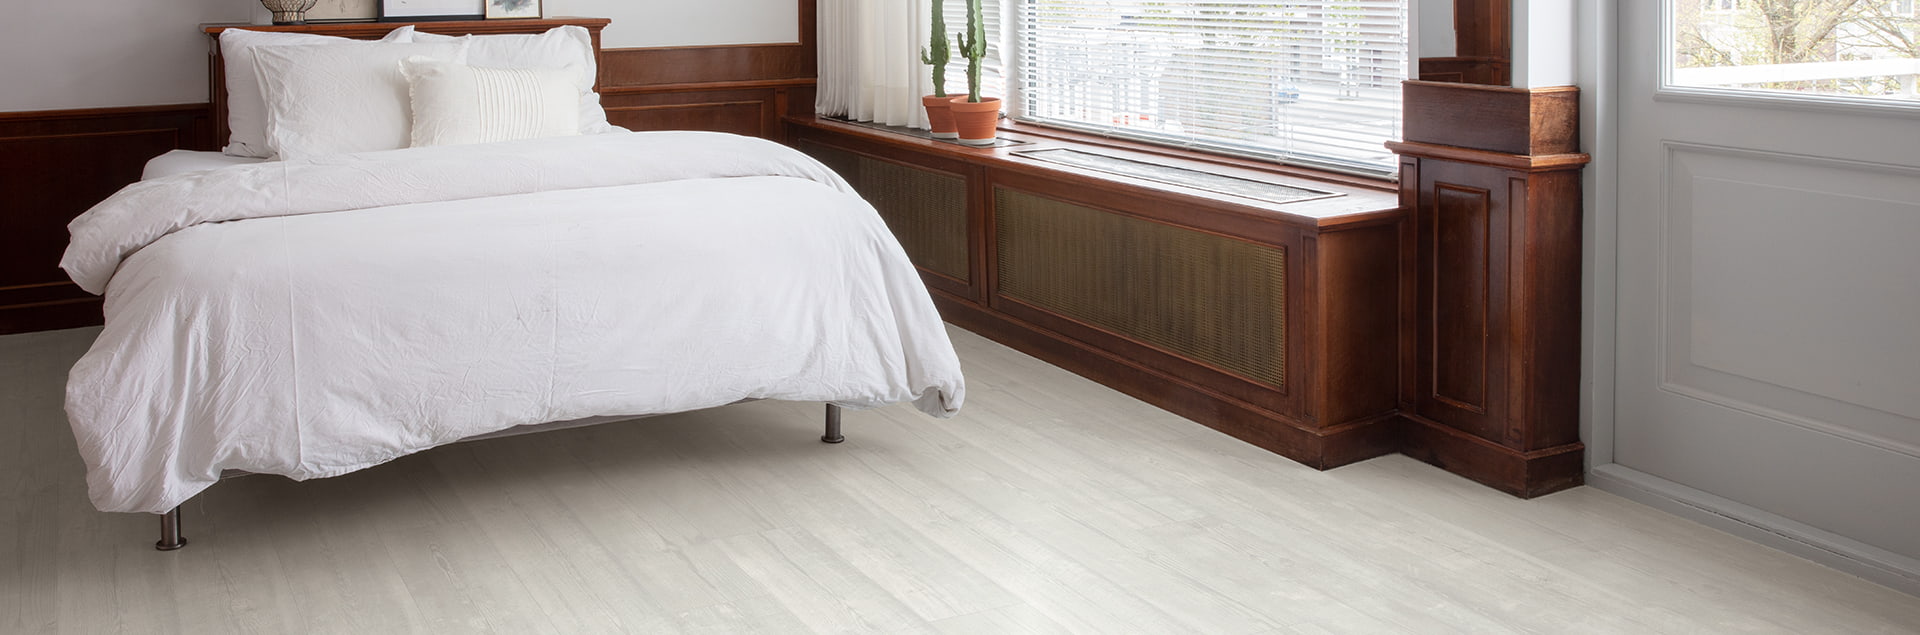 Heldere slaapkamer met witte vinylvloer